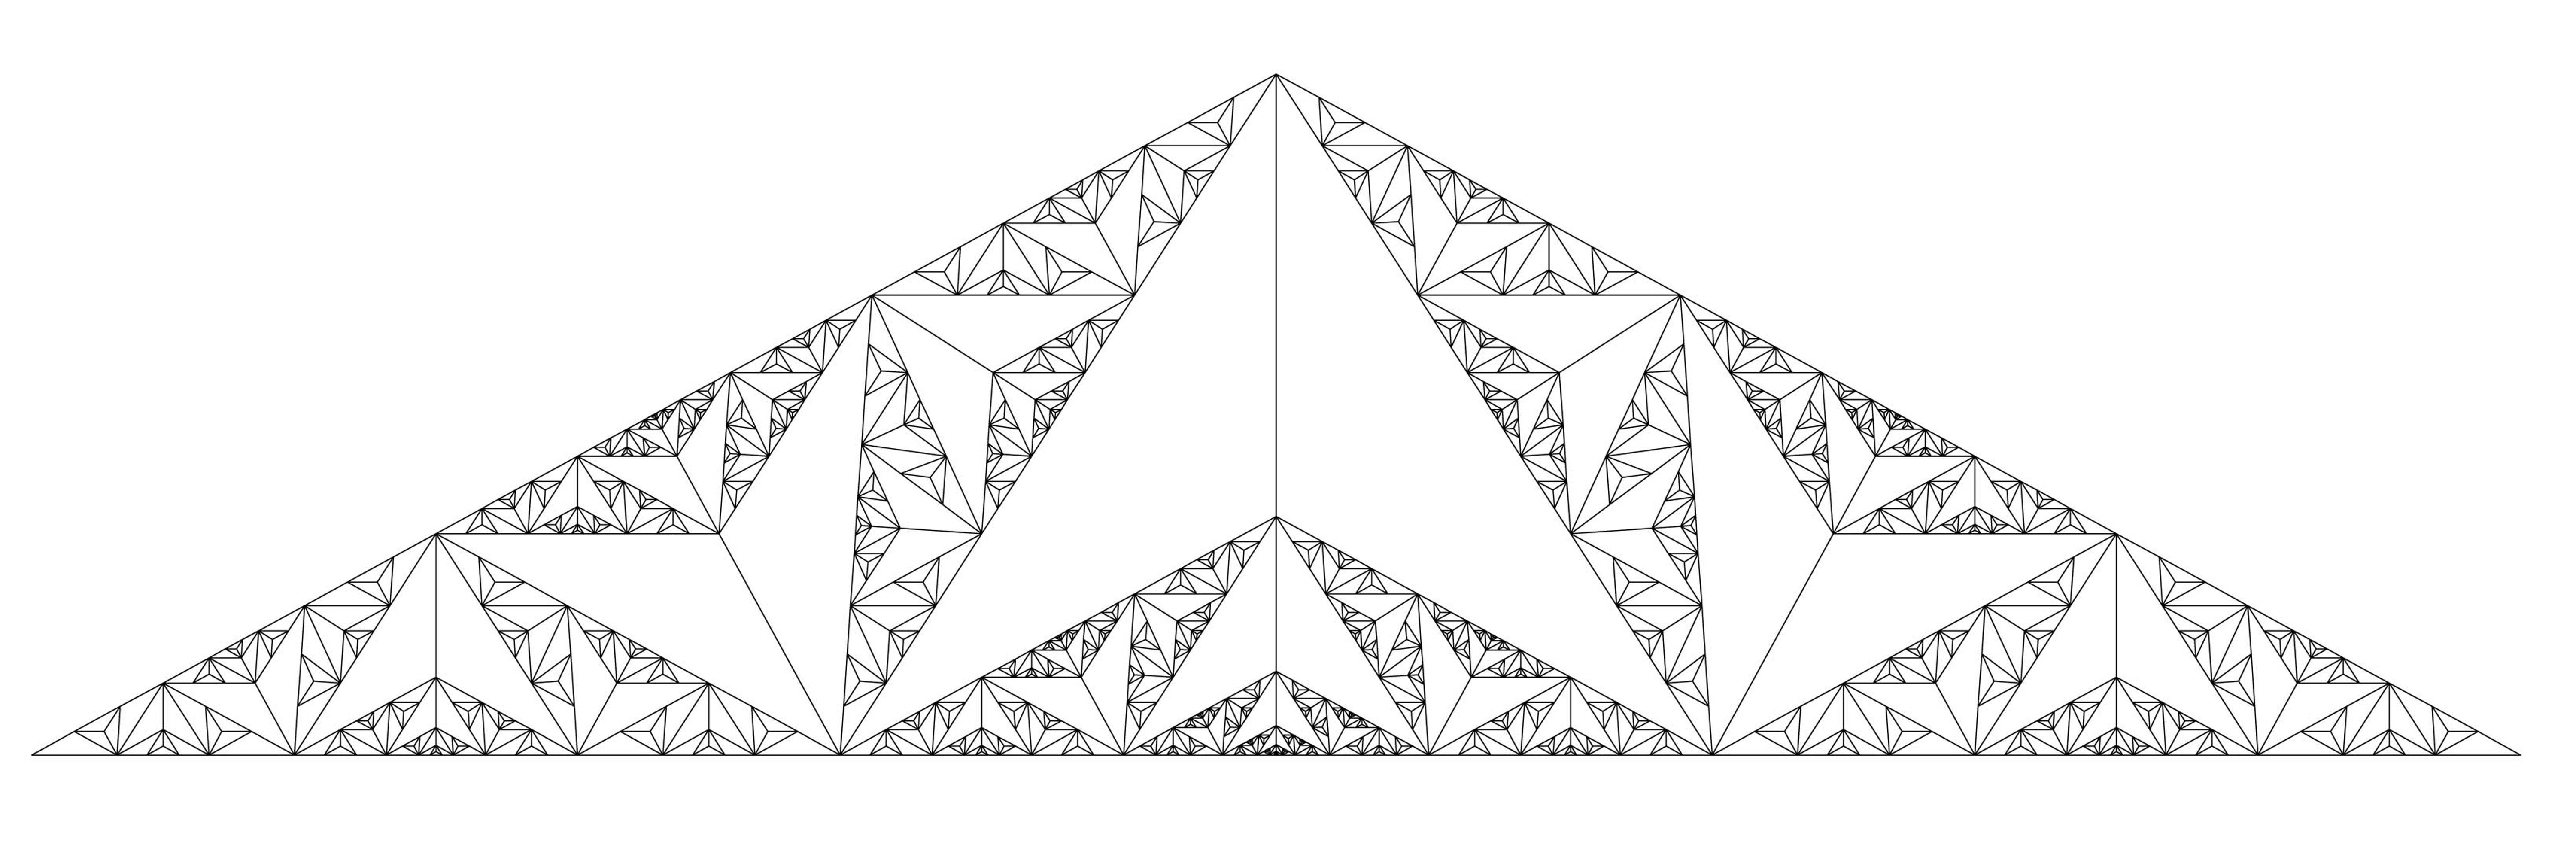 architecture_fractal